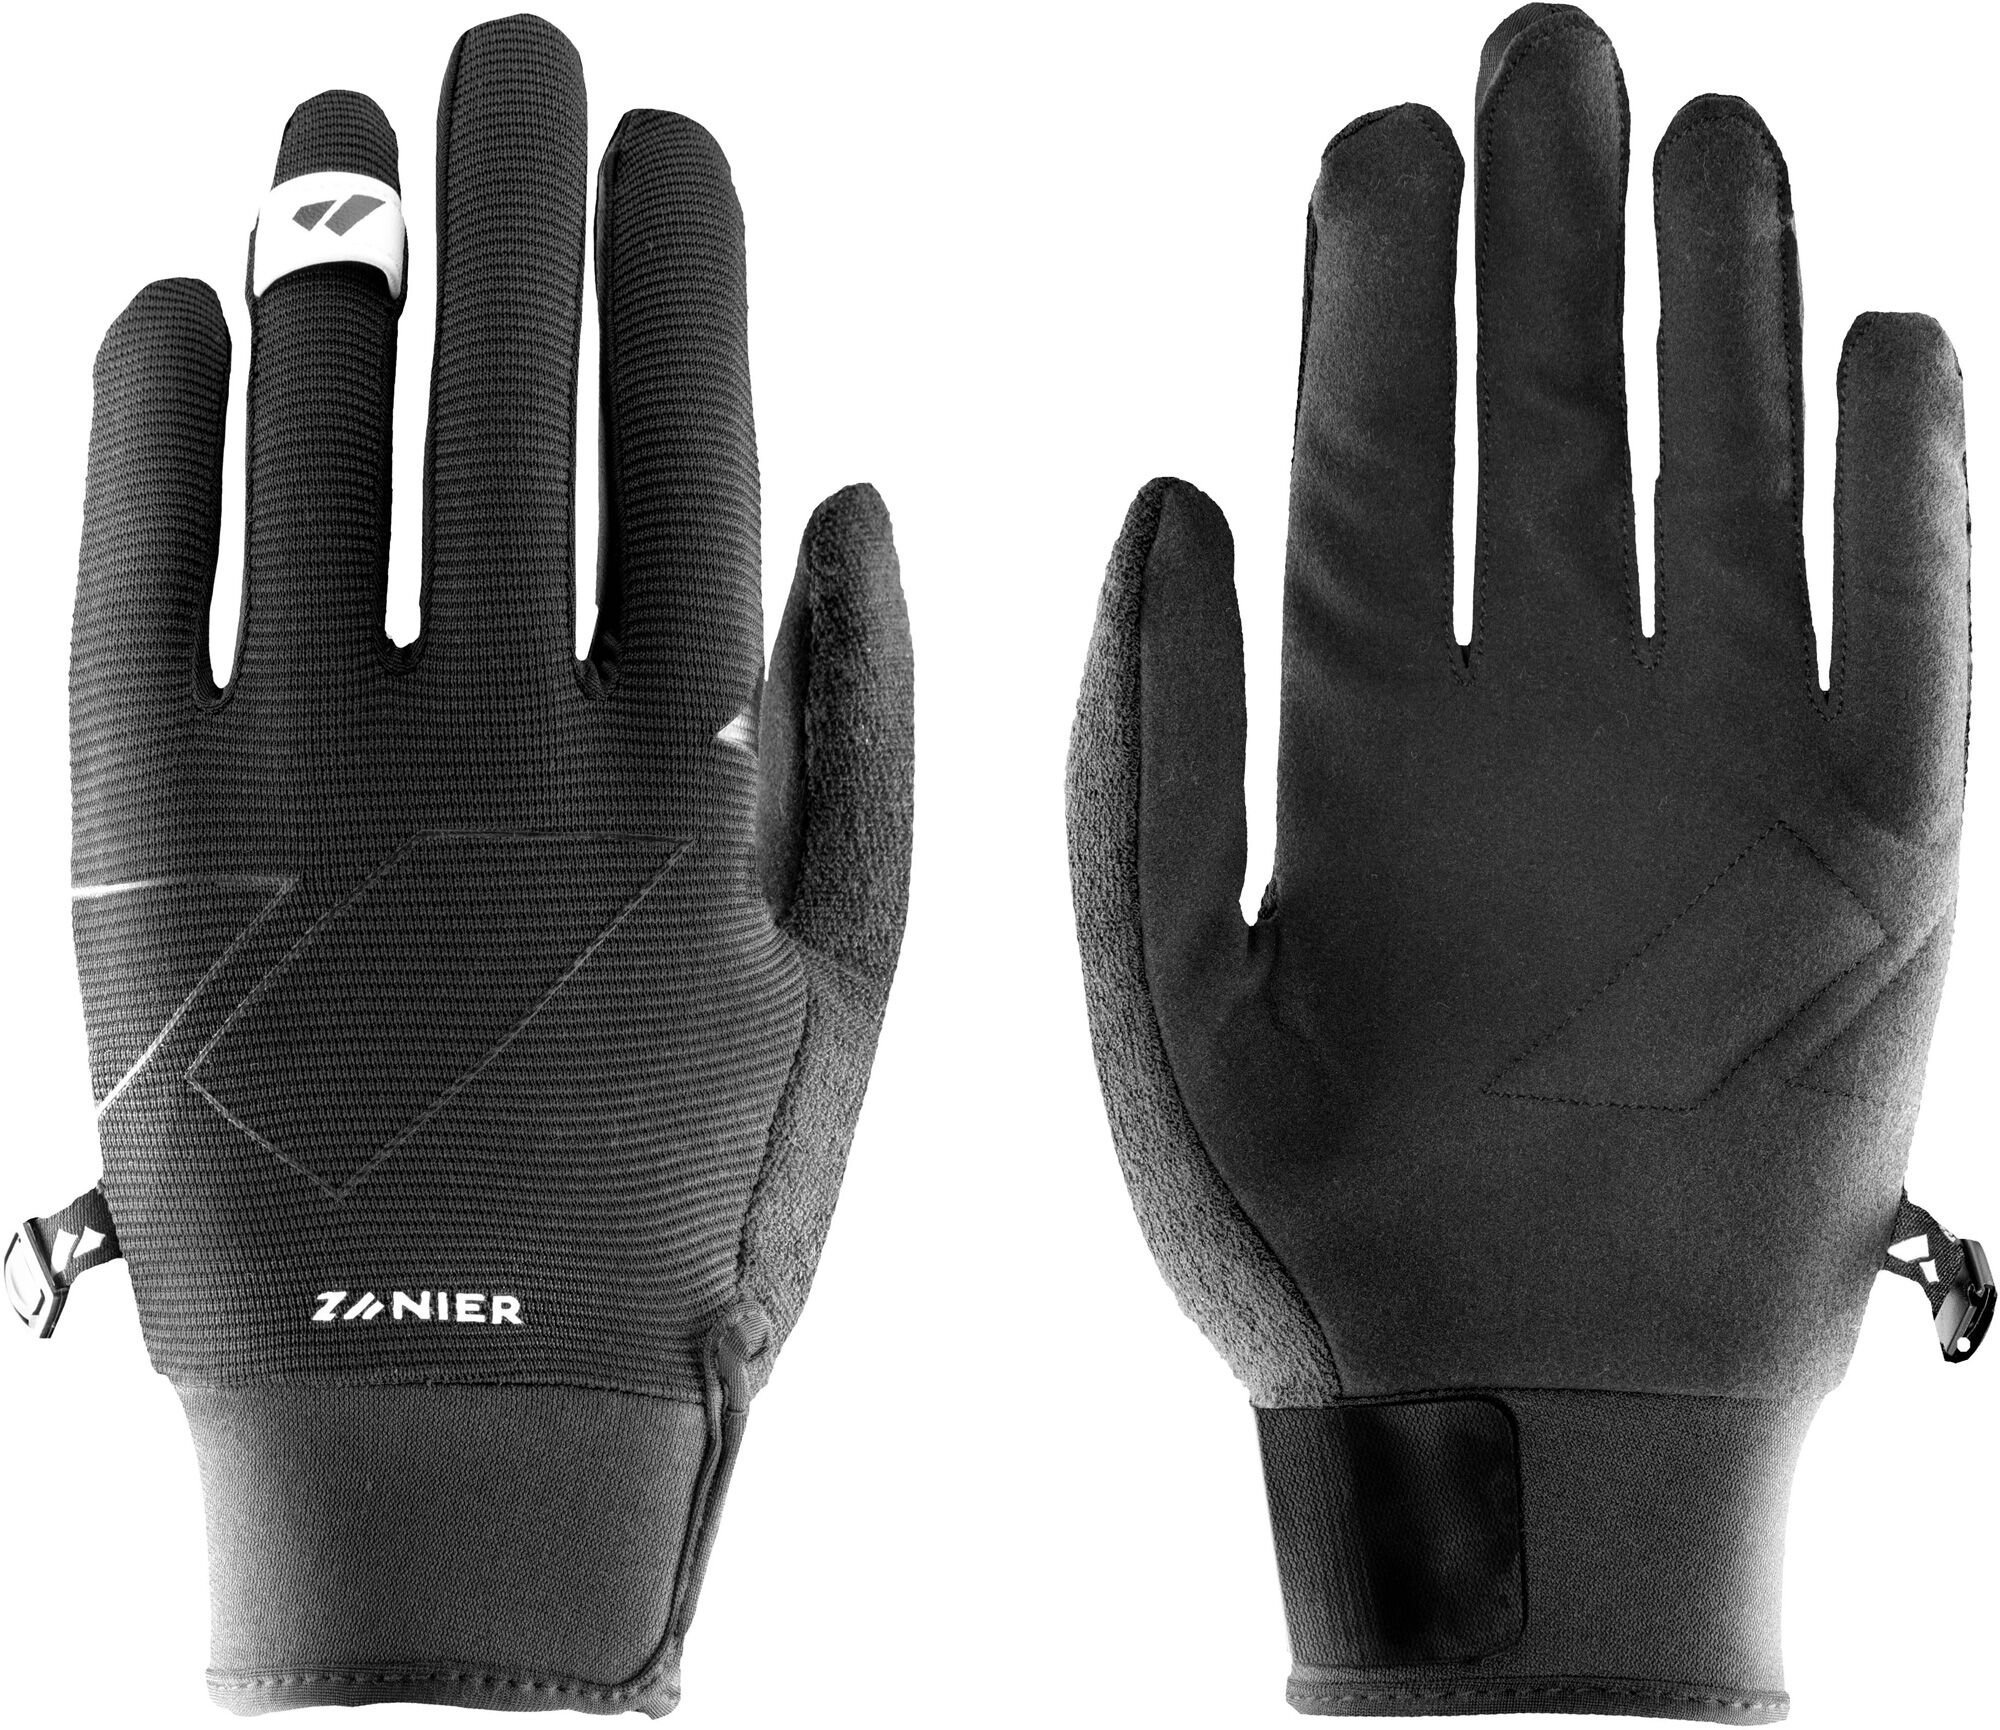 Zanier Rofan Gloves M